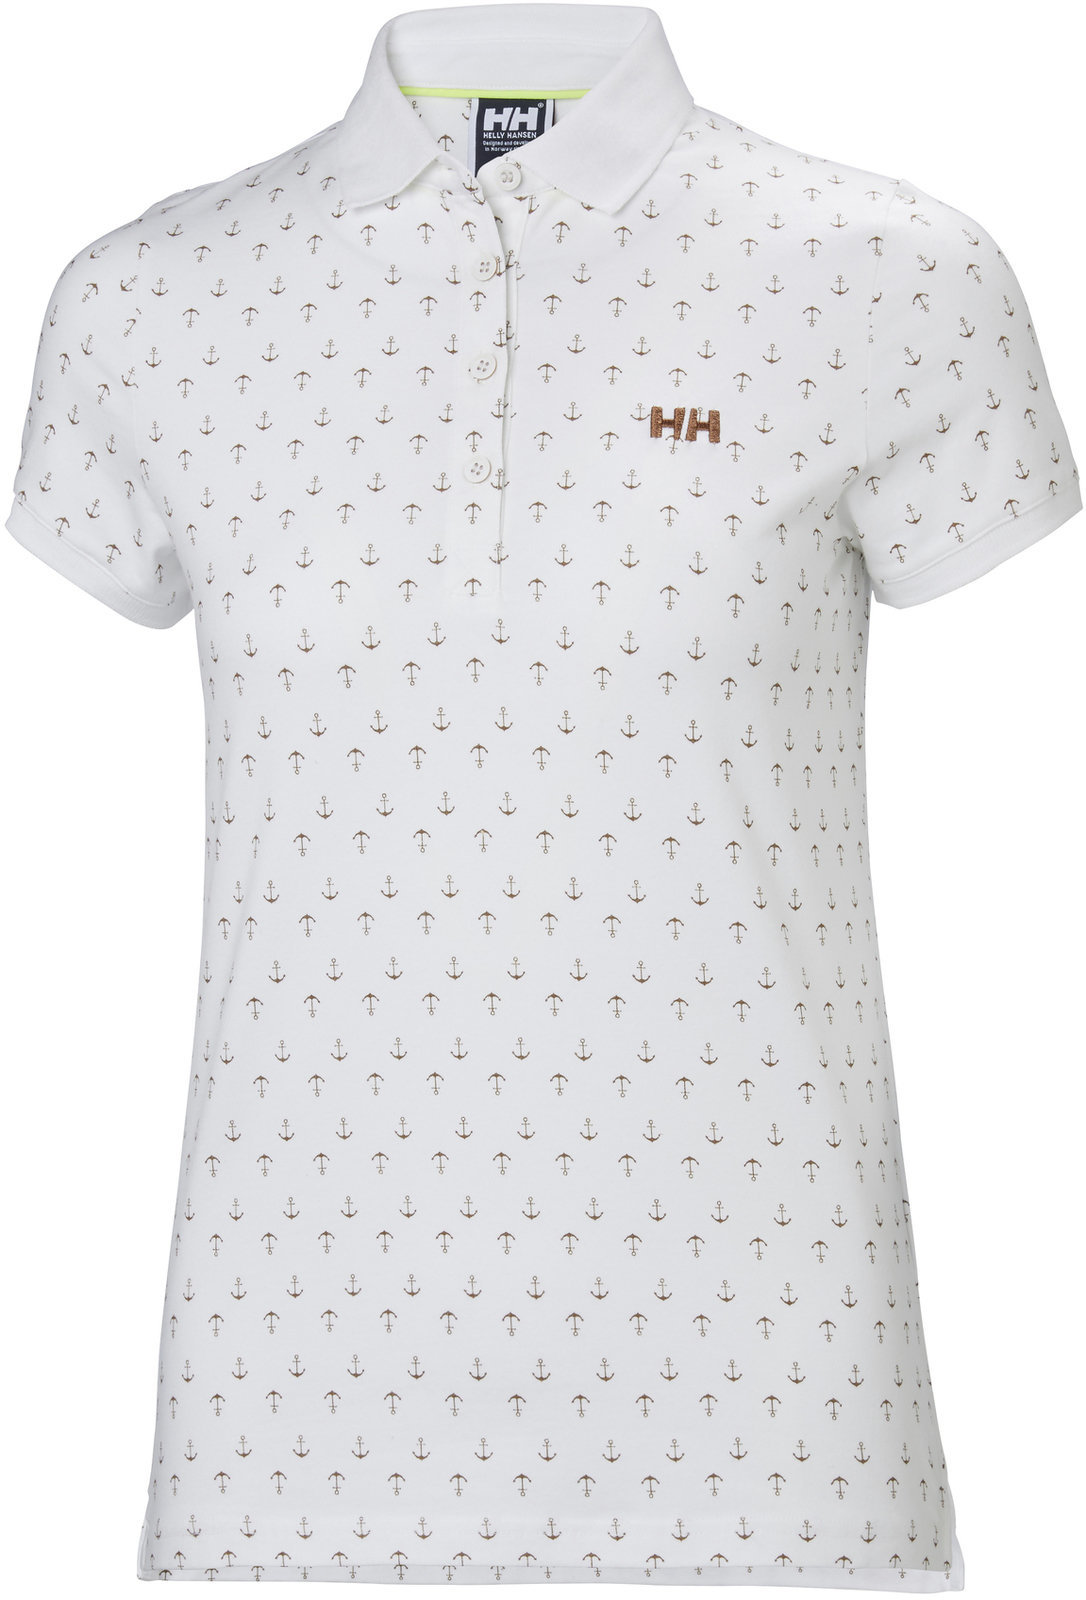 T-Shirt Helly Hansen W Naiad Breeze Polo White Anchor - L